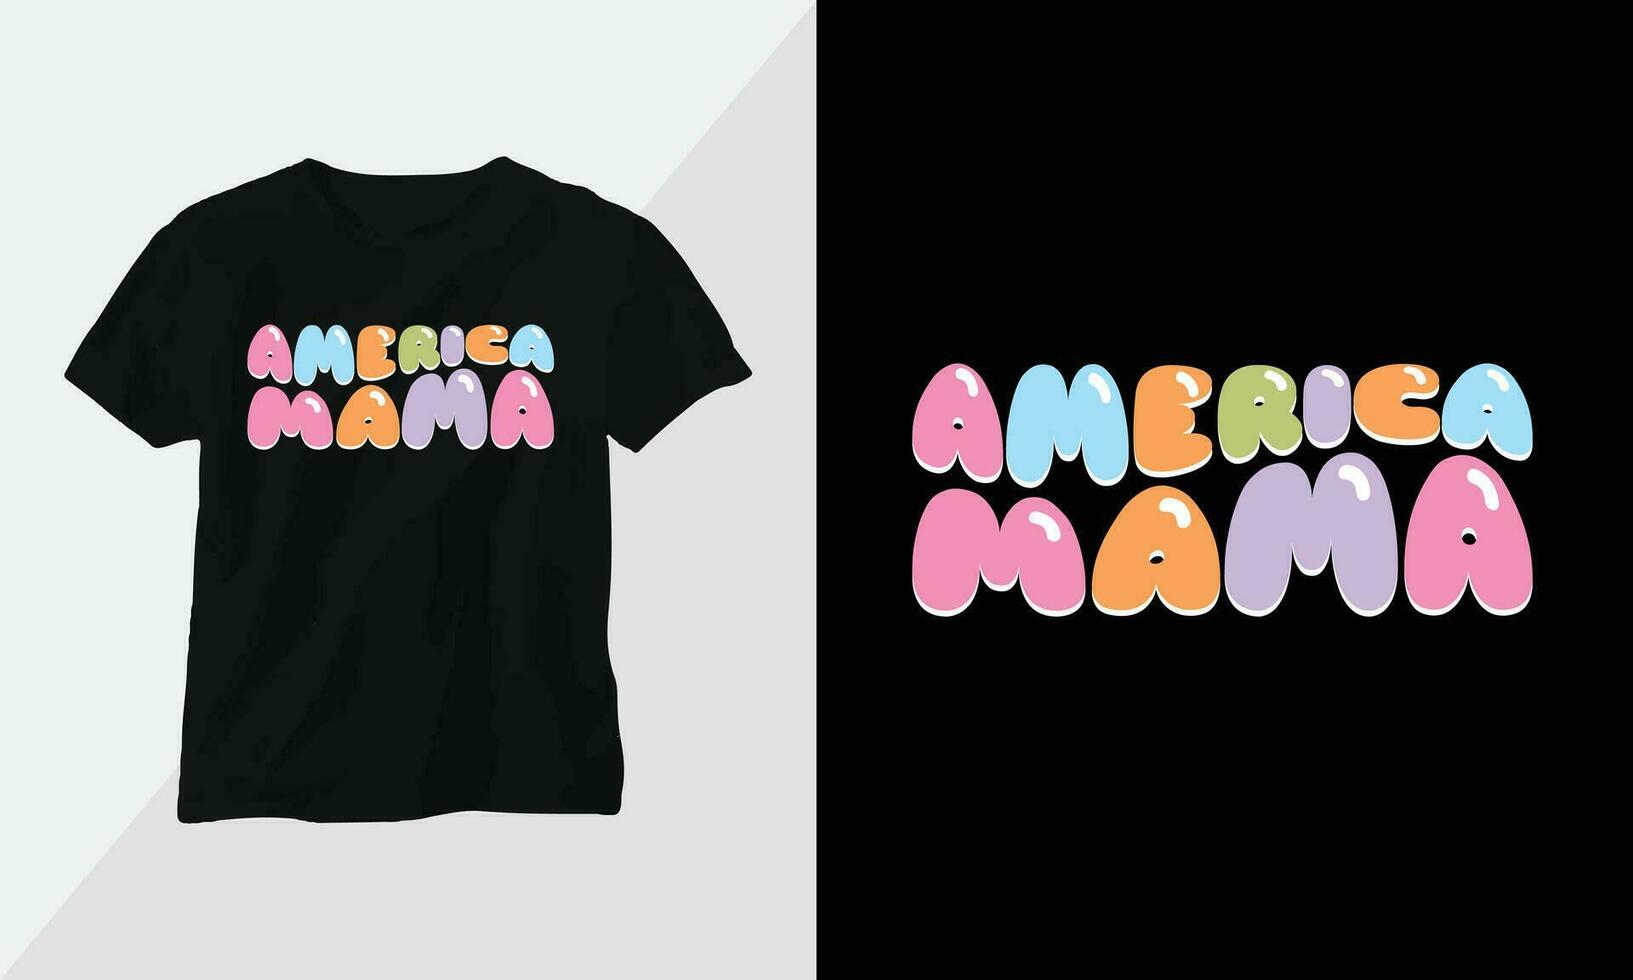 golvend retro groovy t-shirt ontwerp. citaten met Amerika mama ontwerp vector grafisch ontwerp t-shirt, mag, sticker, muur mat, enz. ontwerp vector grafisch sjabloon